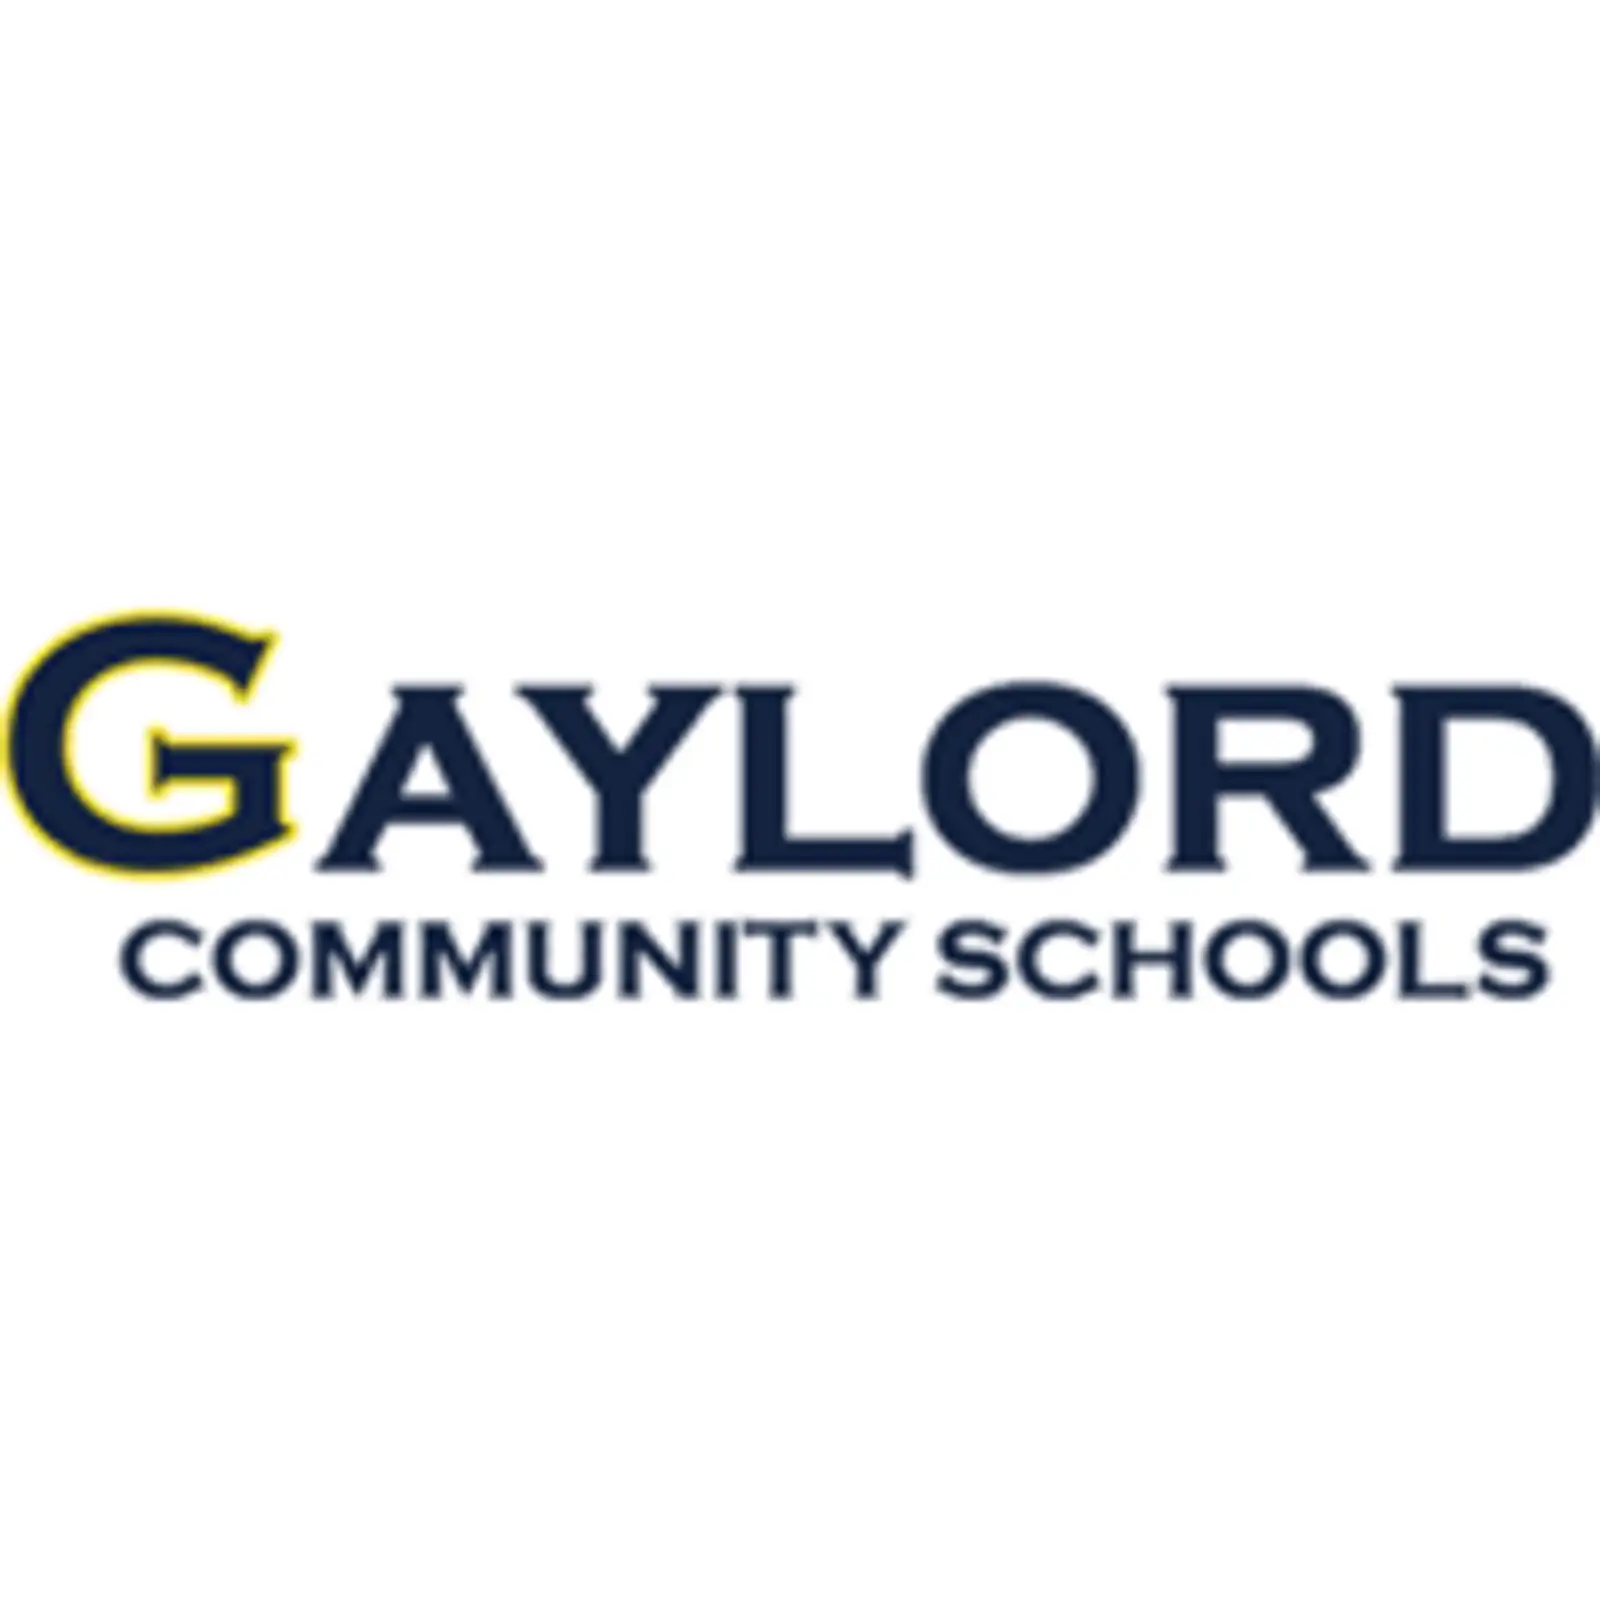 Gaylord Community Schools logo